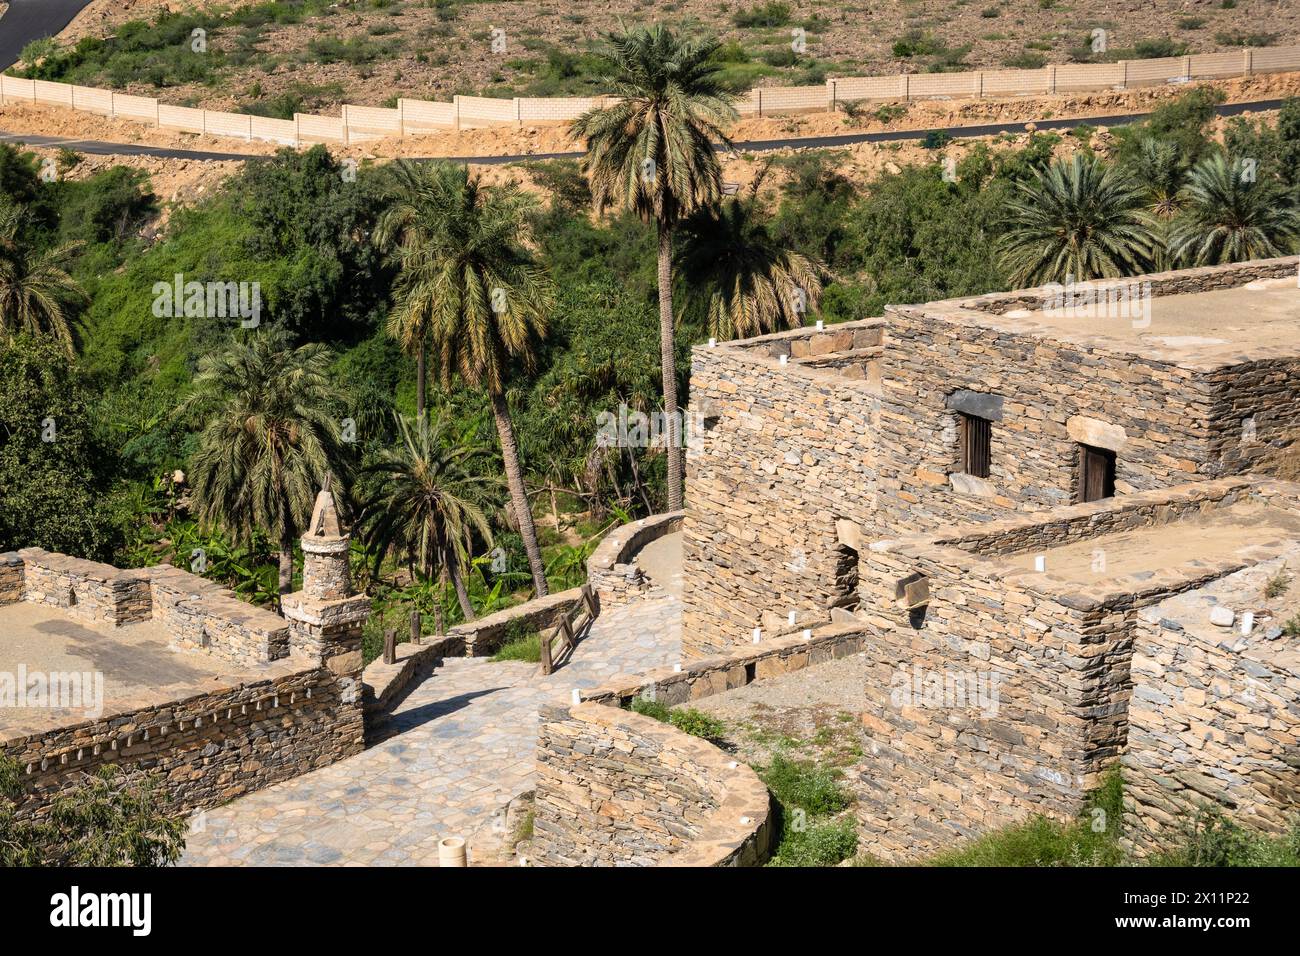 Al-Bahah, Saudi-Arabien: Außenansicht des antiken Dorfes Thee Ain, bekannt als das Marmordorf, in der Nähe von Dschidda in Saudi-Arabien Stockfoto